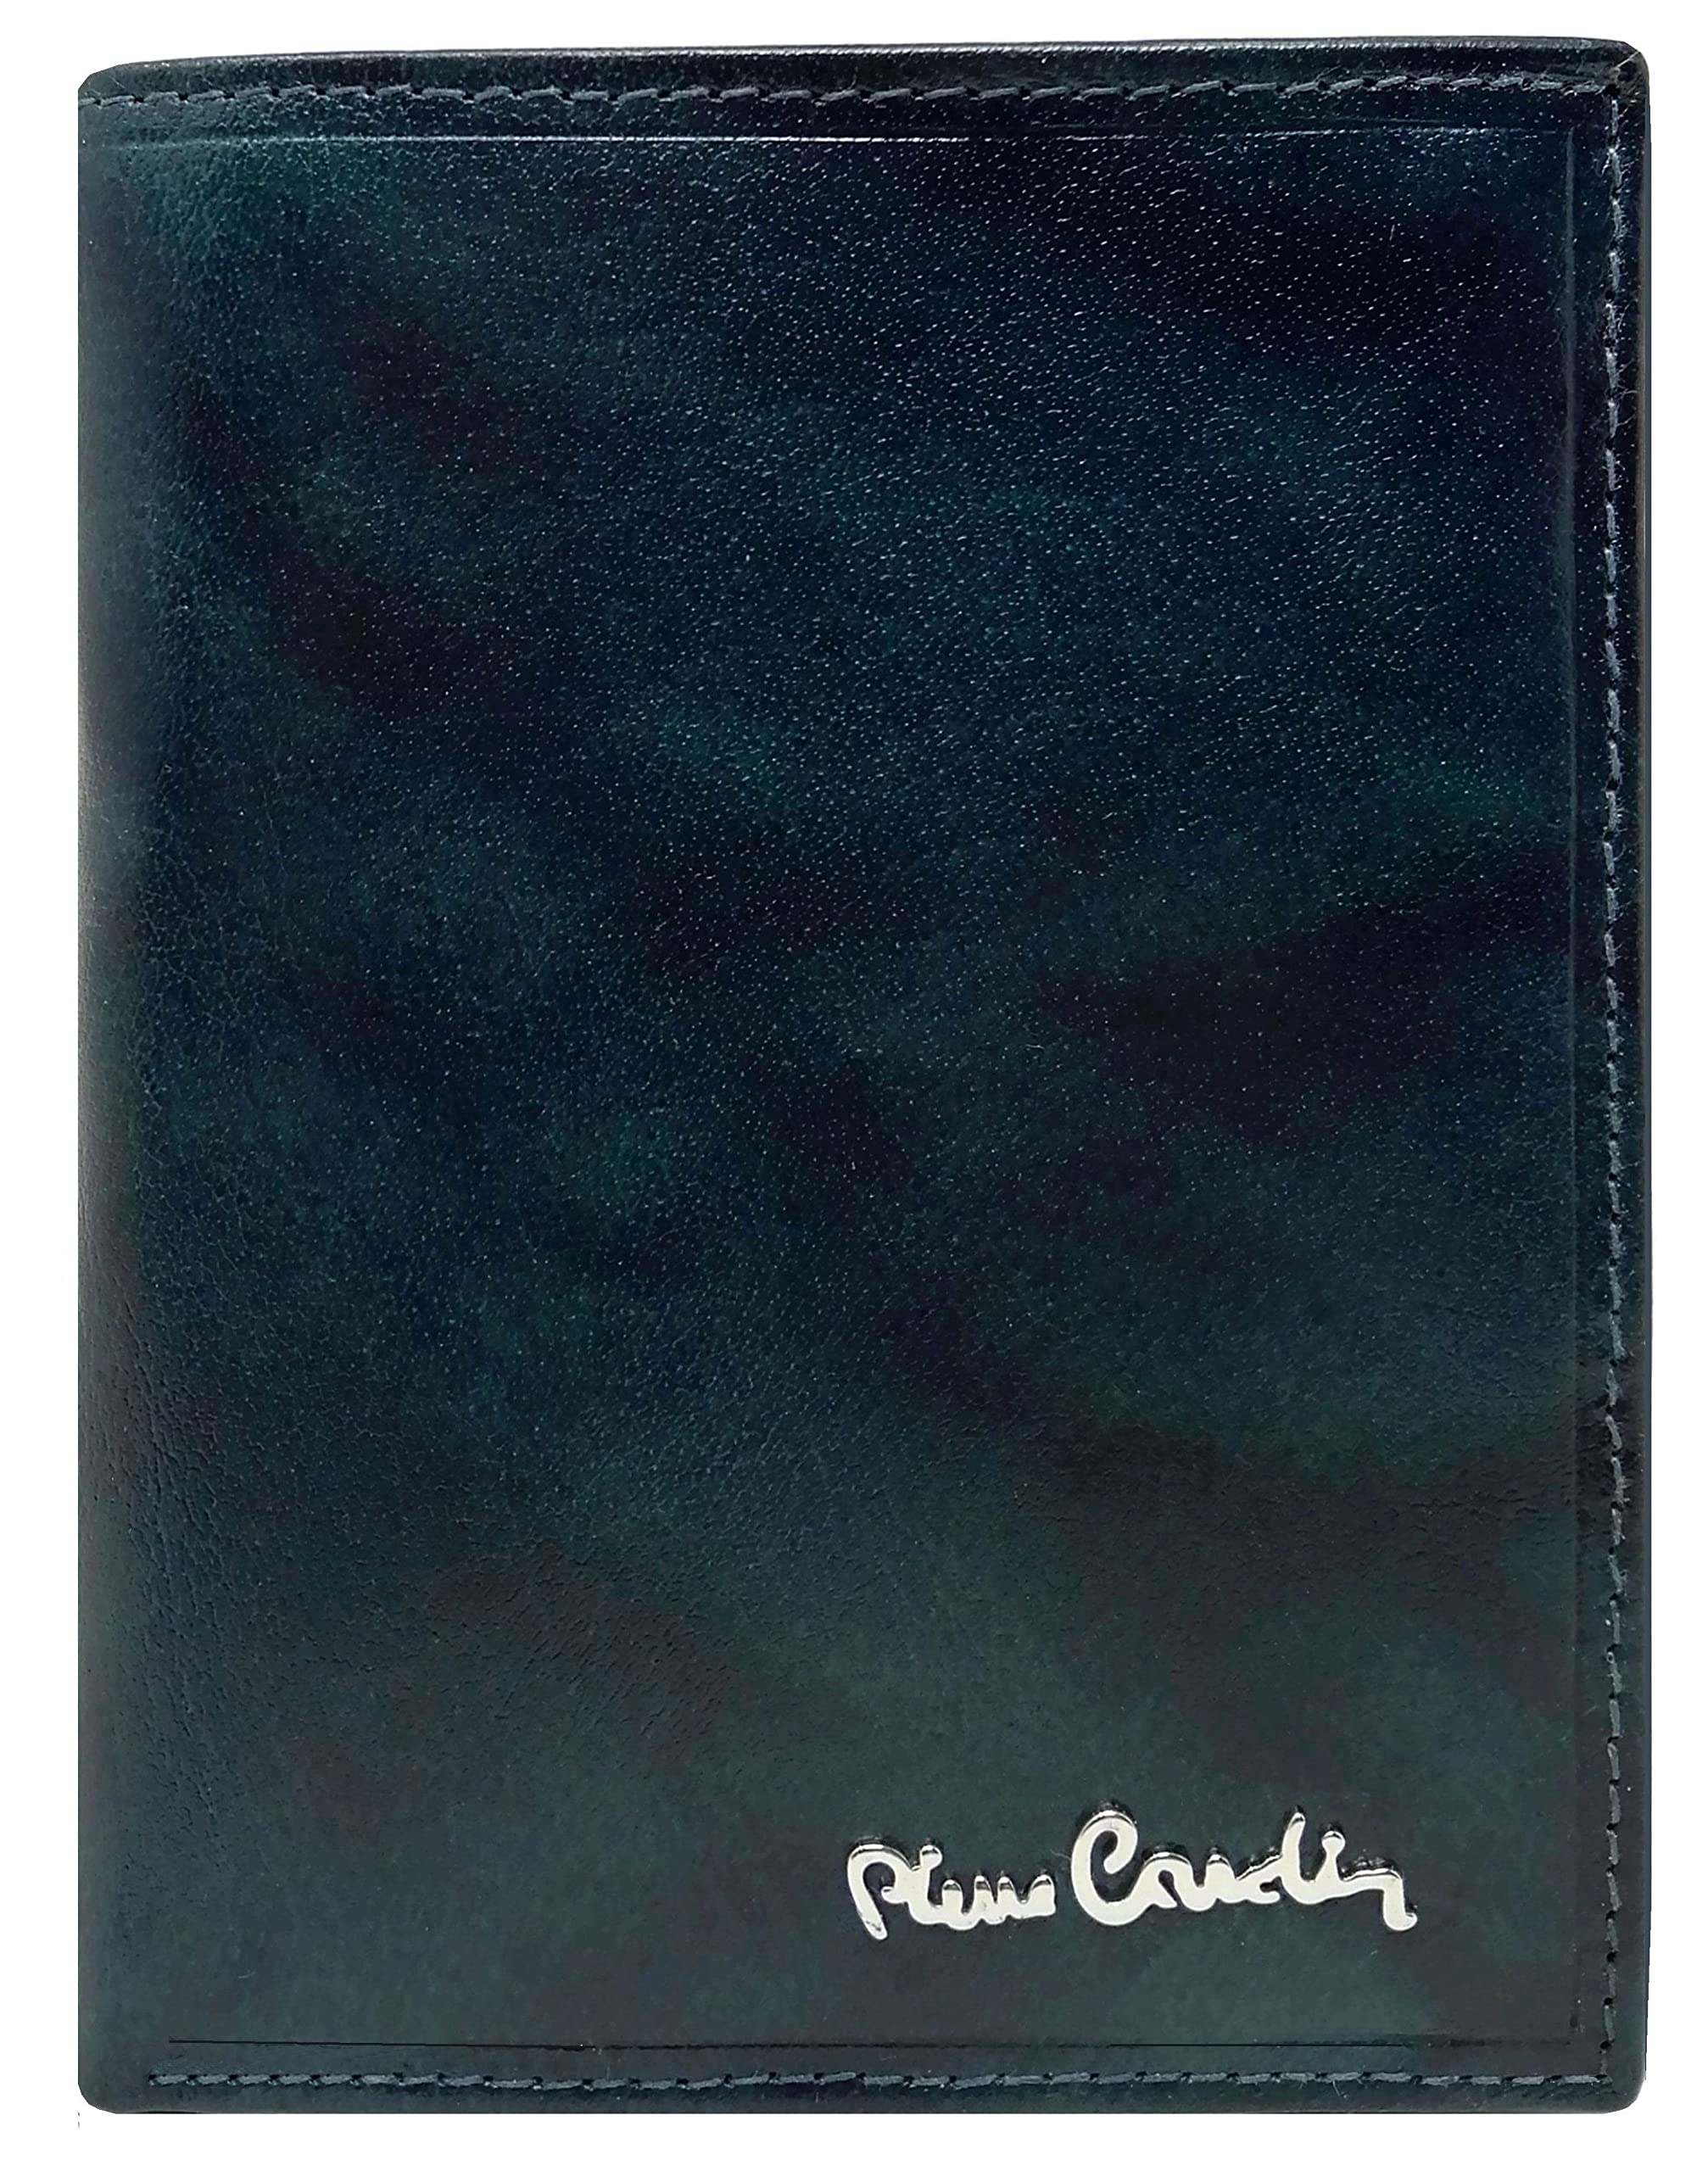 acheter Pierre Cardin Portefeuille pour homme, cuir véritable, petit mince rfid, cadeau, portefeuille avec porte-monnaie, porte-billets, portefeuille garçon, bleu oNMC0teM7 bien vendre